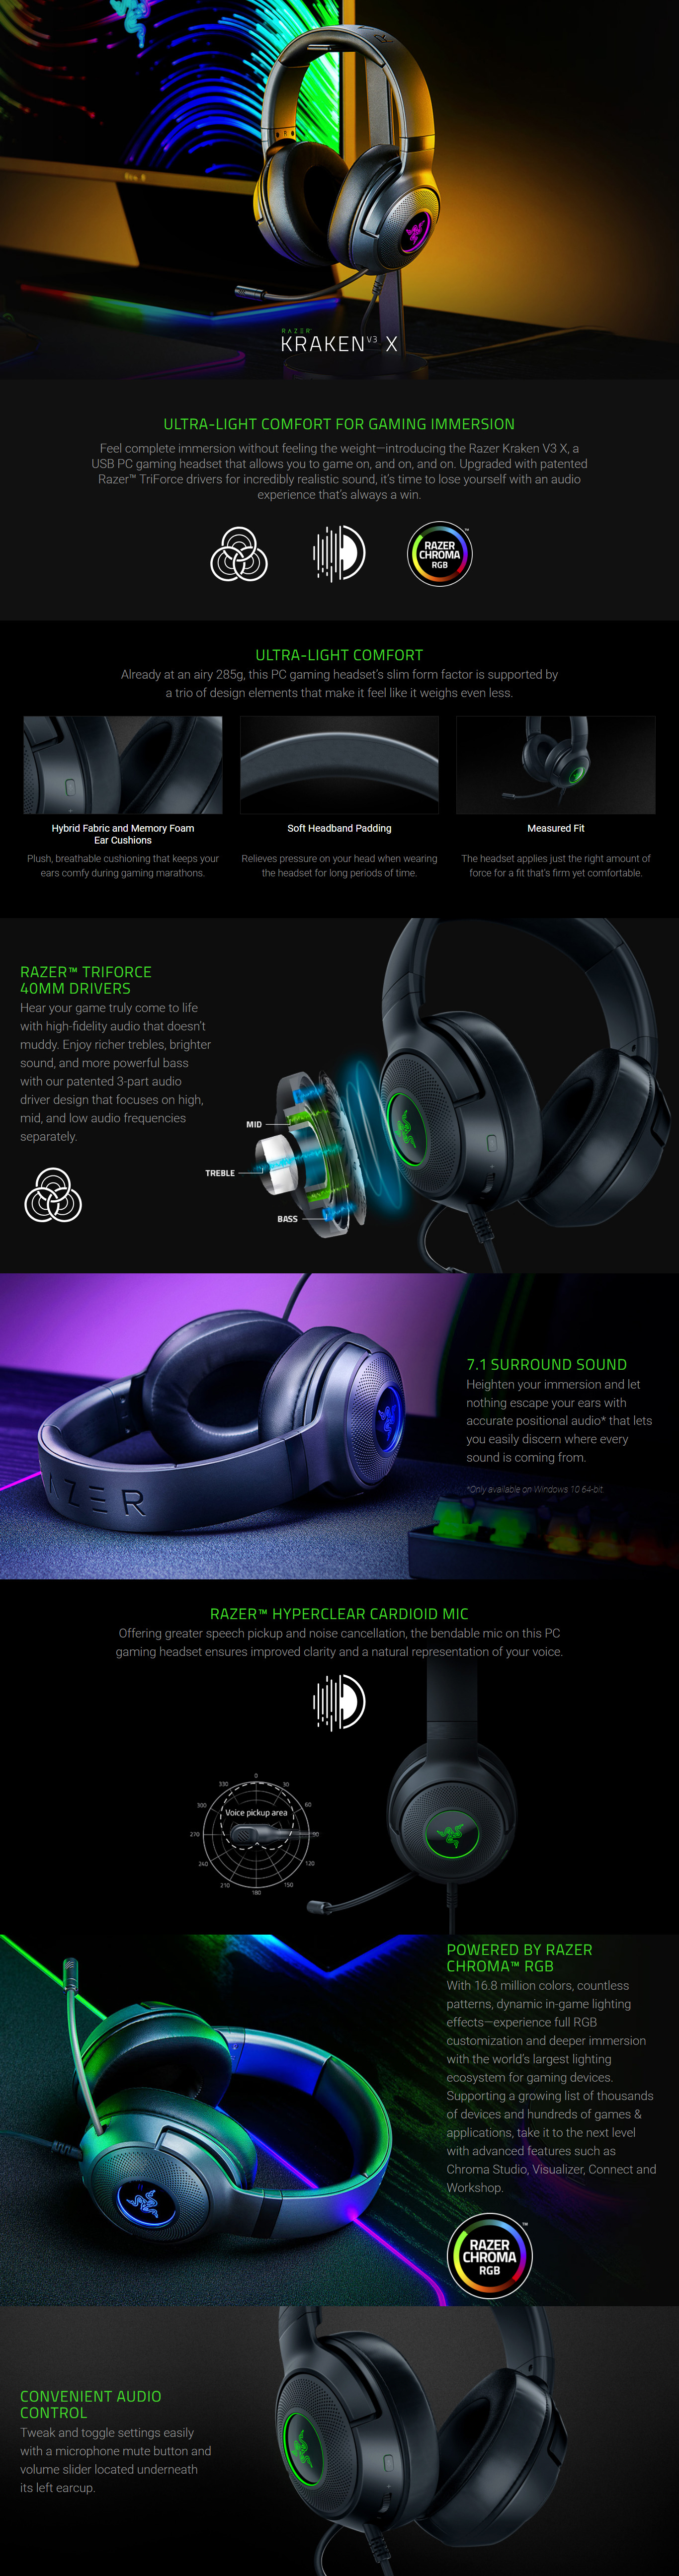 Headphones-Razer-Kraken-V3-X-Wired-USB-Gaming-Headset-RZ04-03750300-R3M1-3